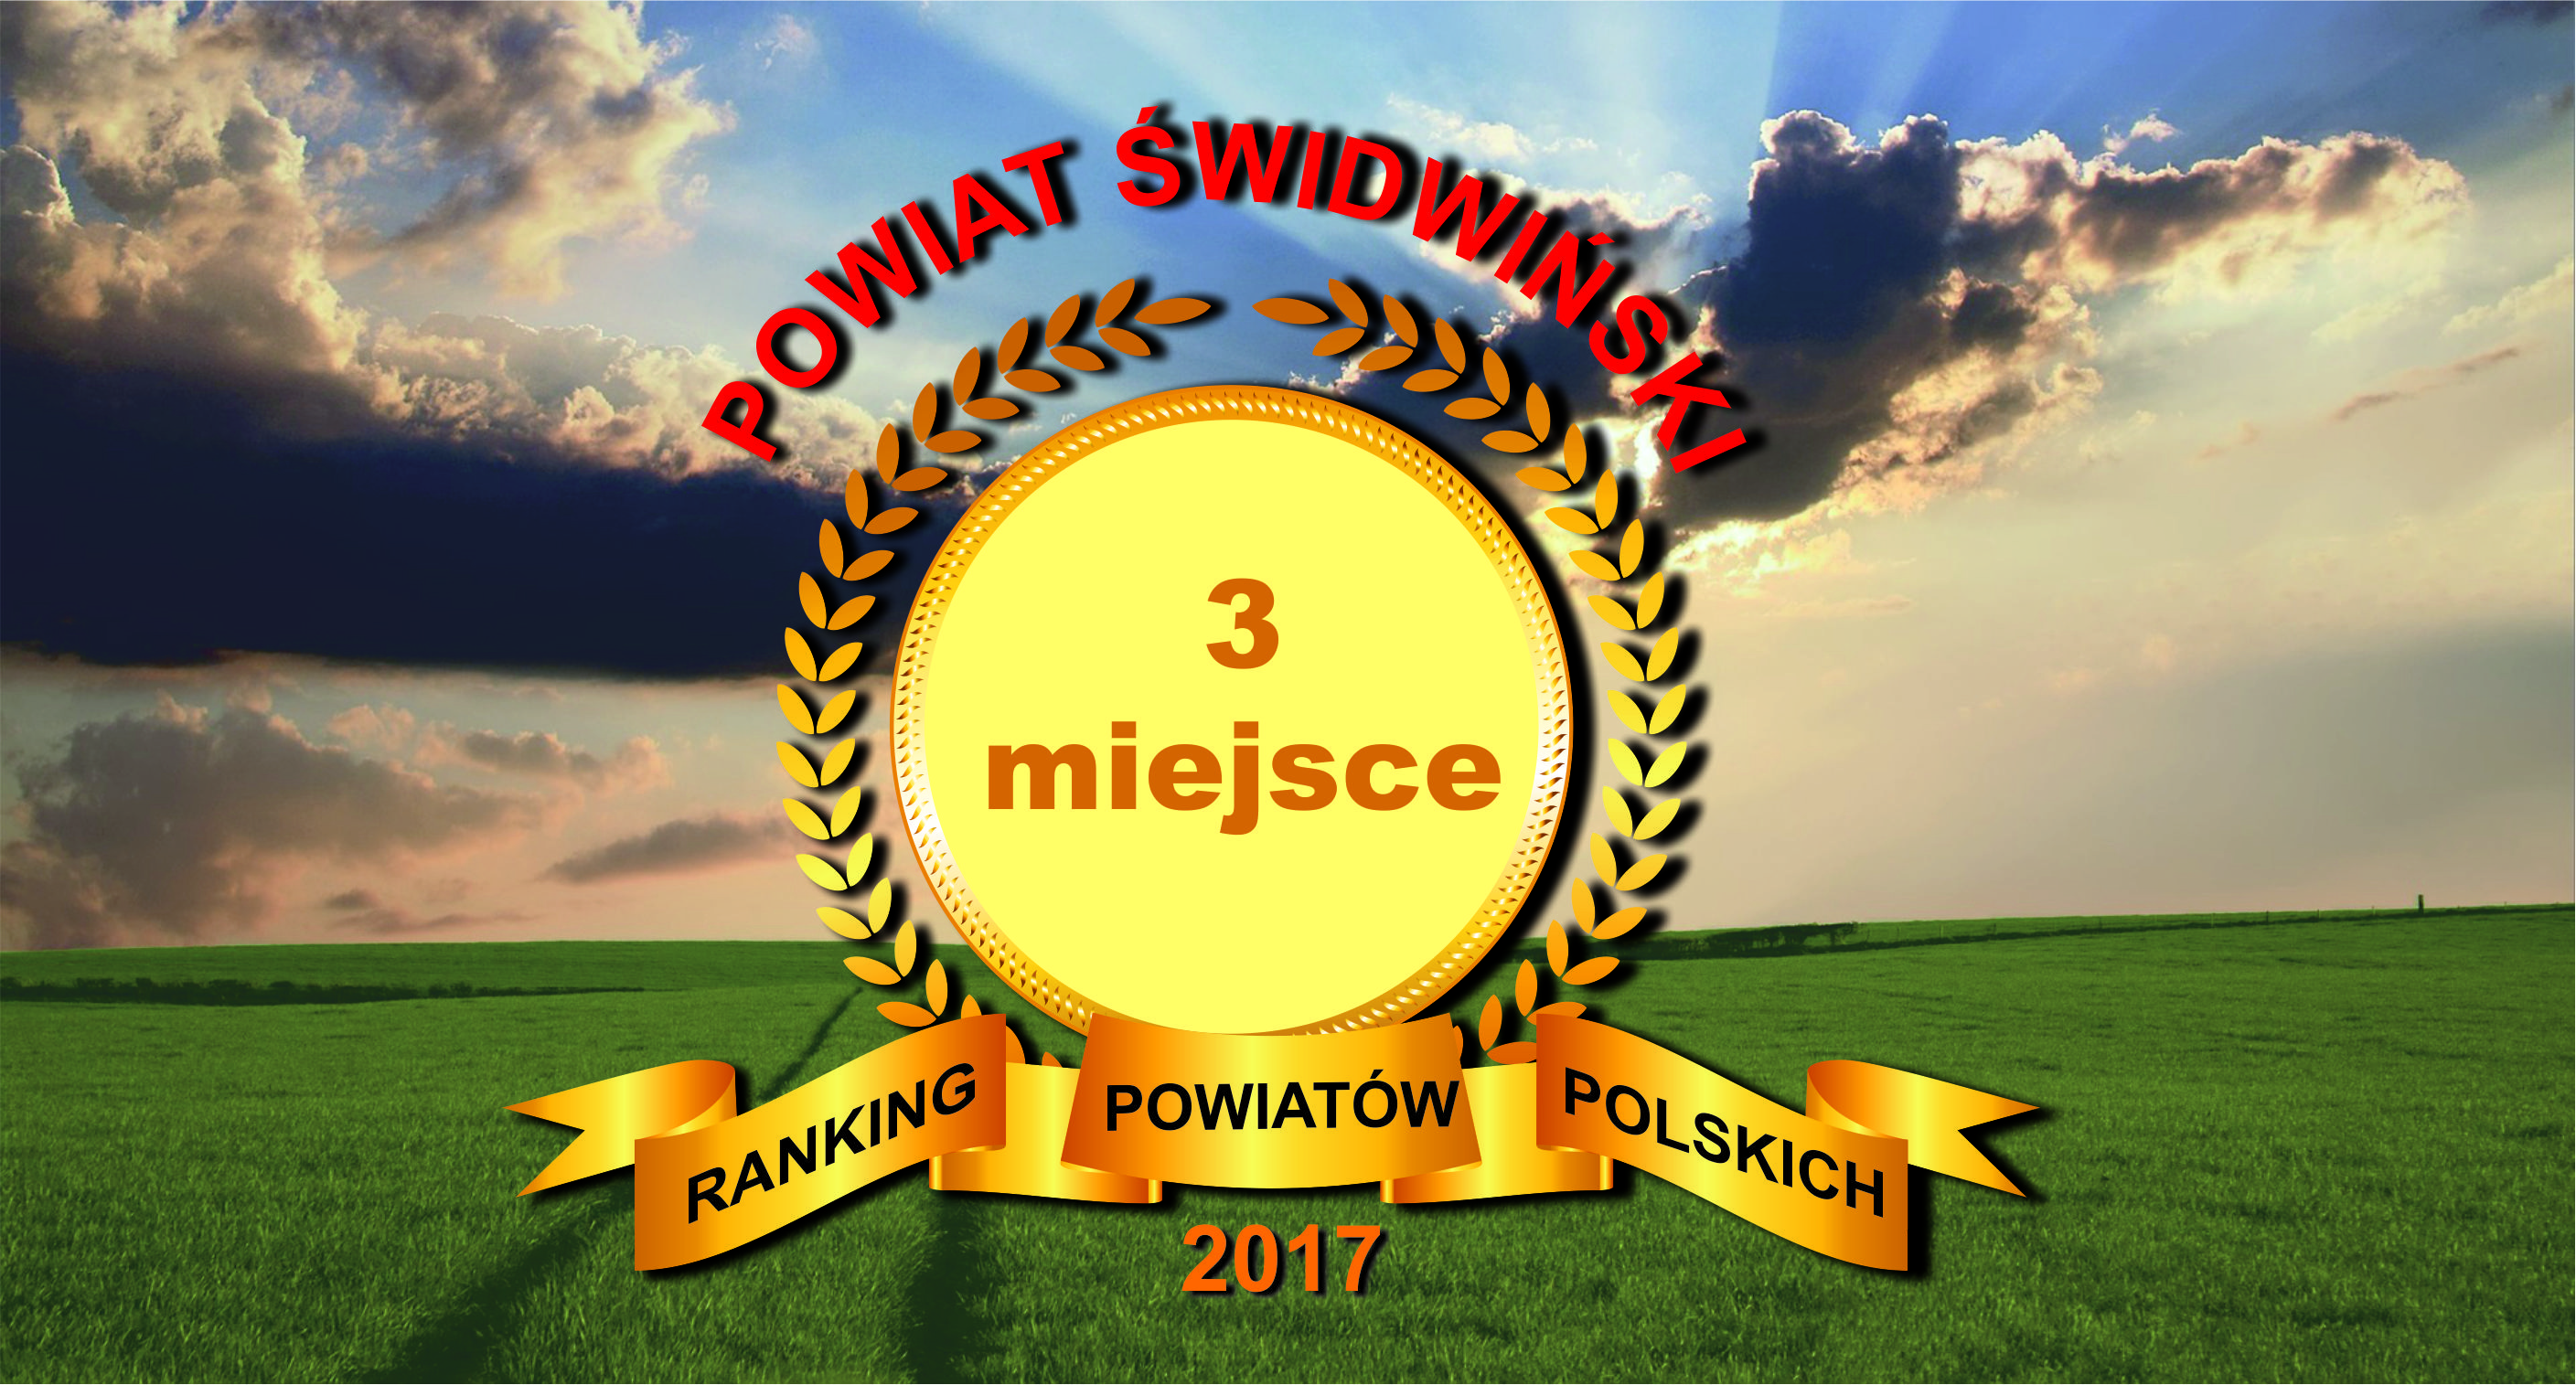 ranking powiatw 2017